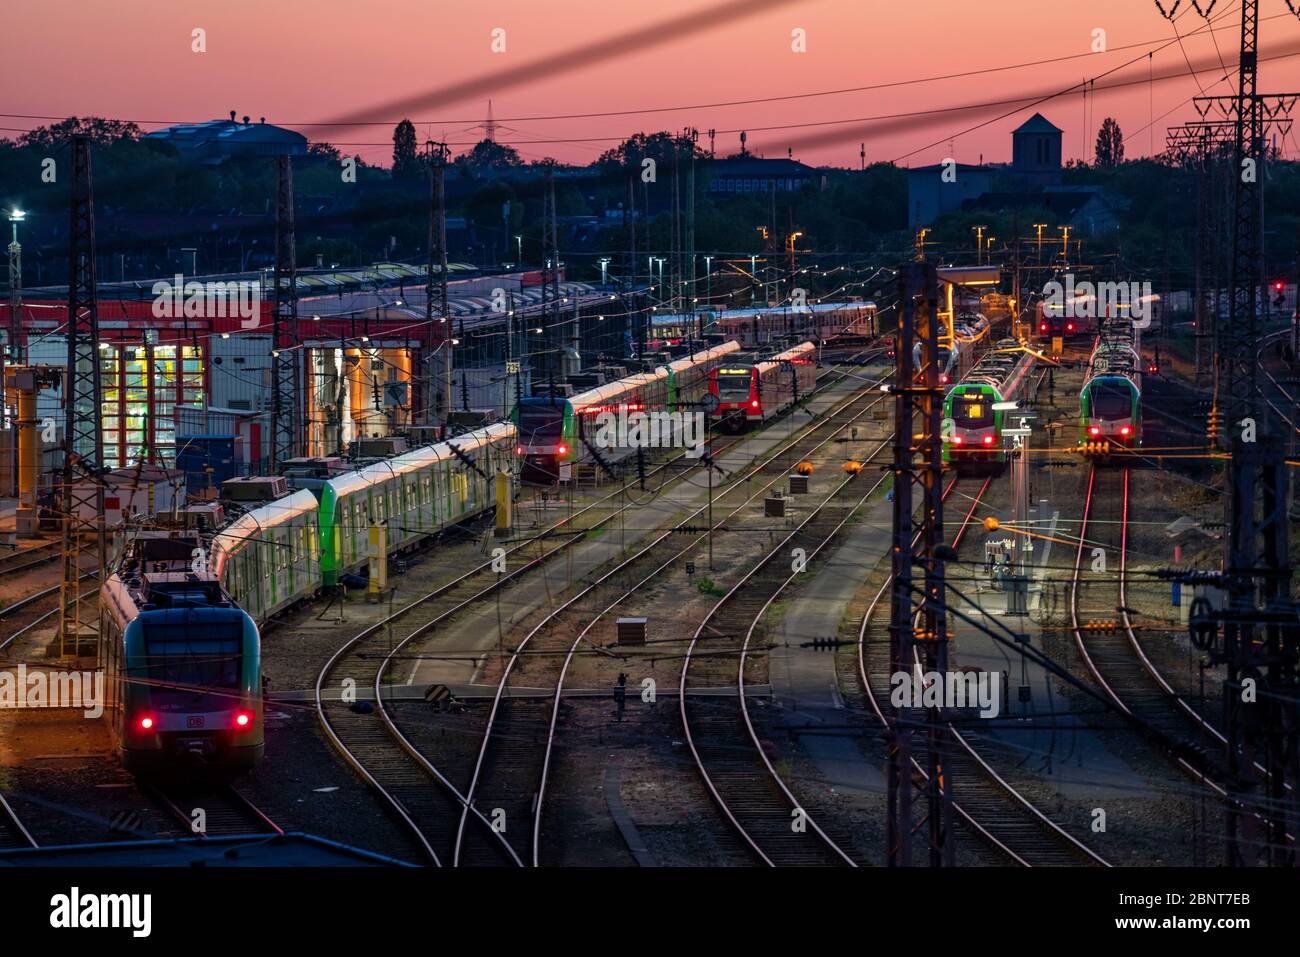 LABORATORIO DB Regio in NRW, treni locali, Essen, NRW, Germania Foto Stock